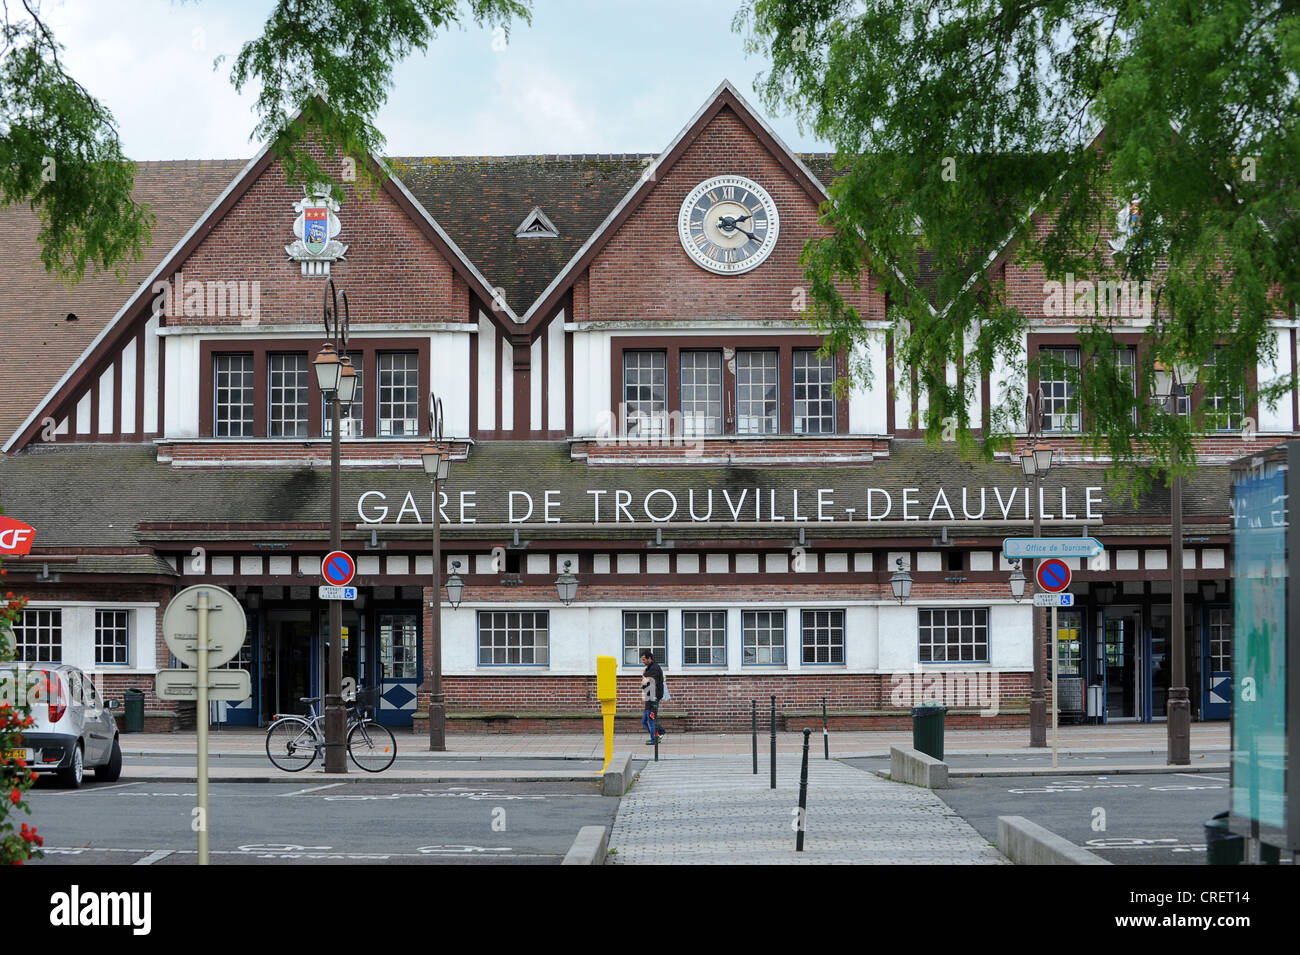 Trouville - Deauville Railway Station Gare De Trouville-Deauville Normandy France Stock Photo